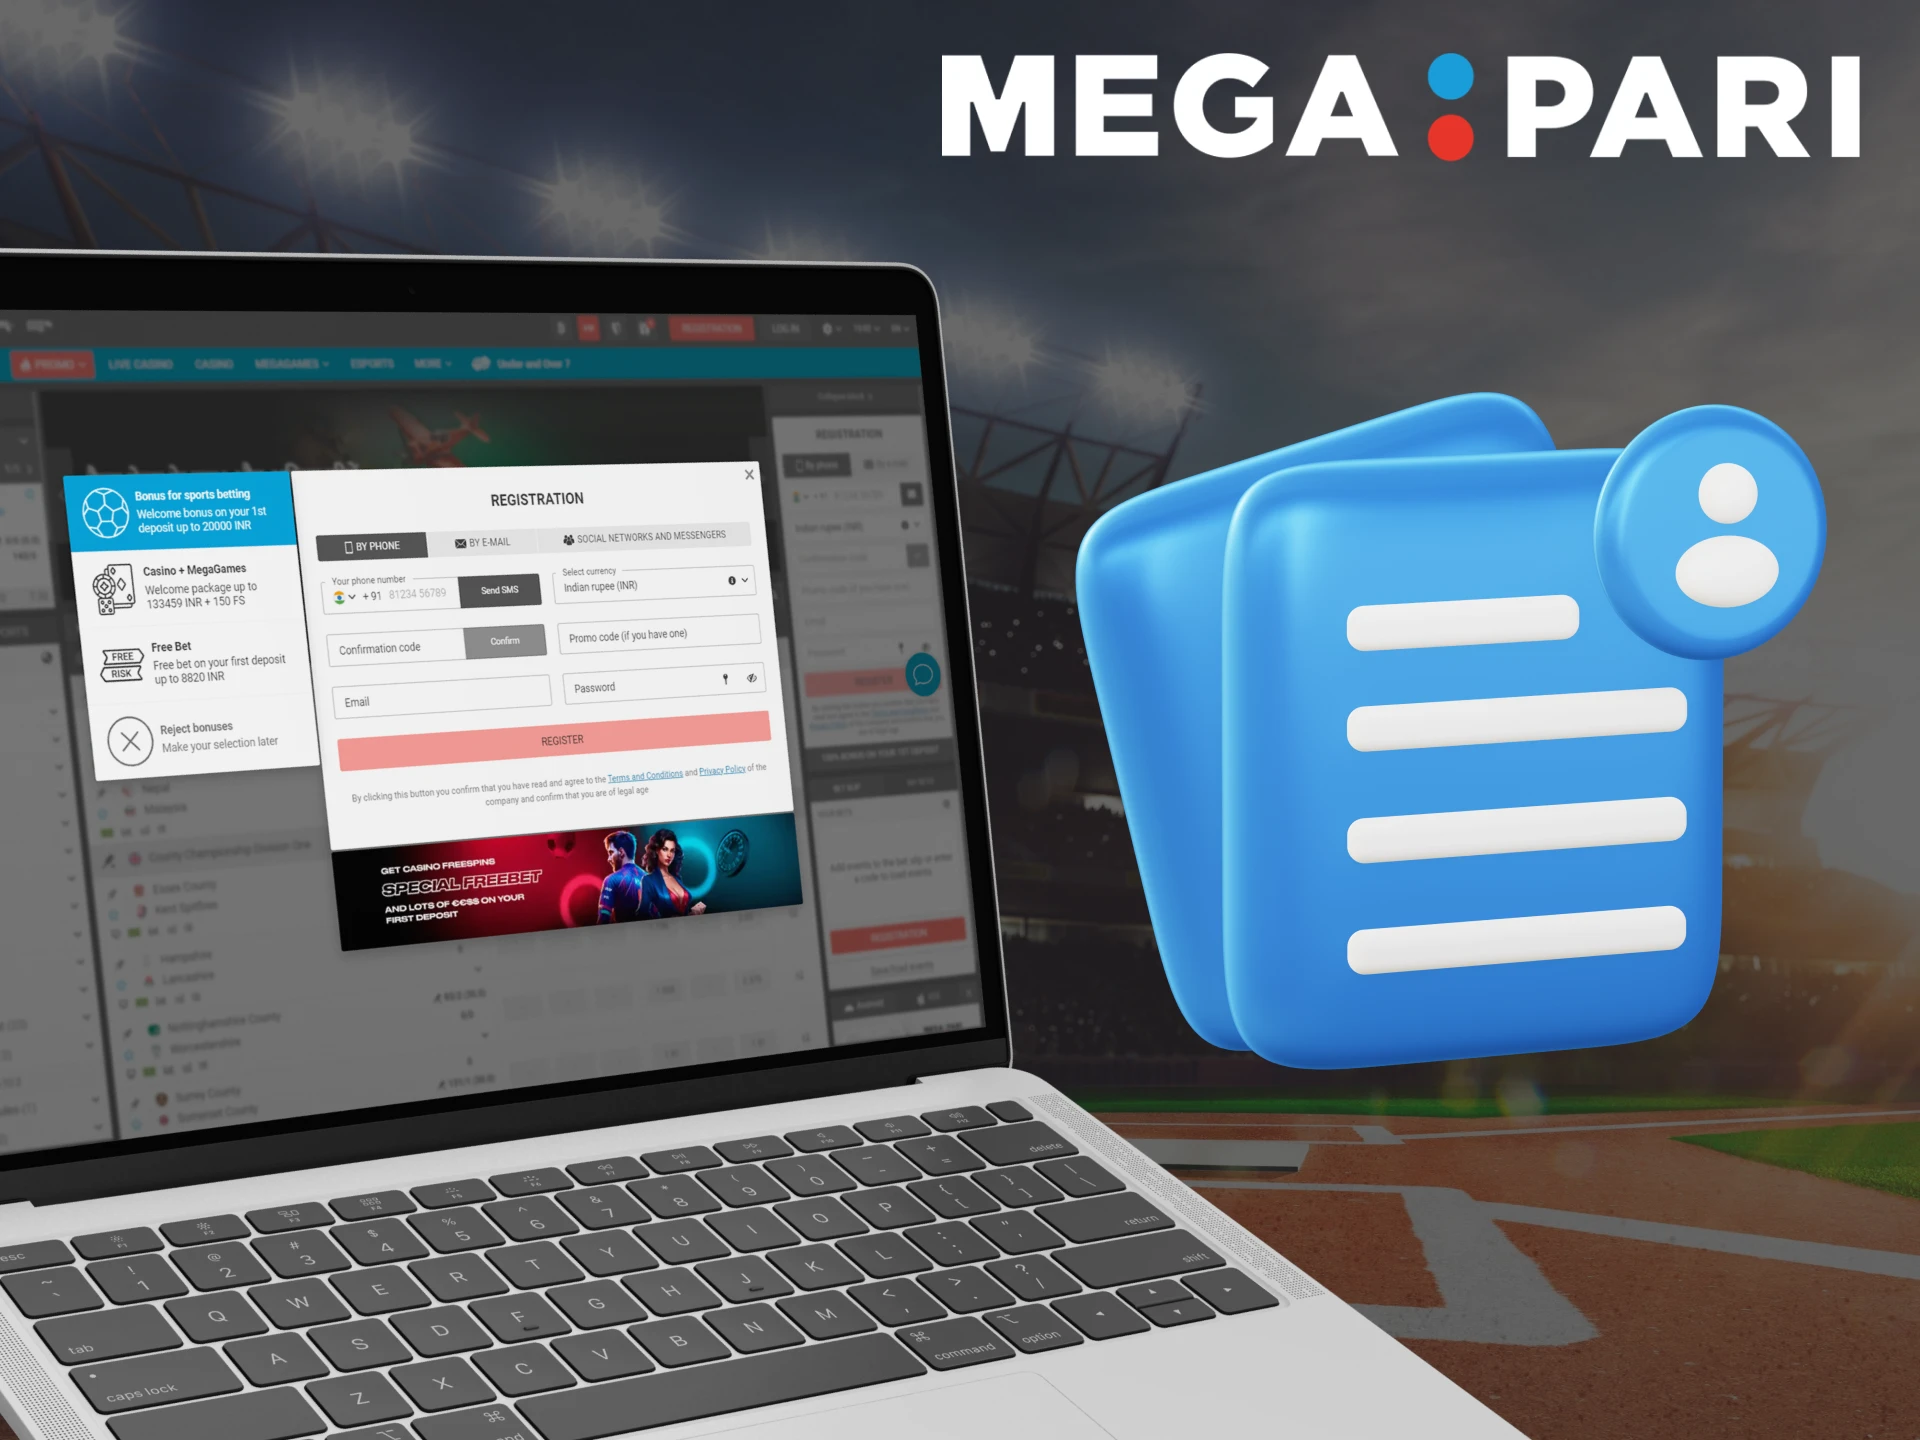 Register with Megapari using your favorite method.